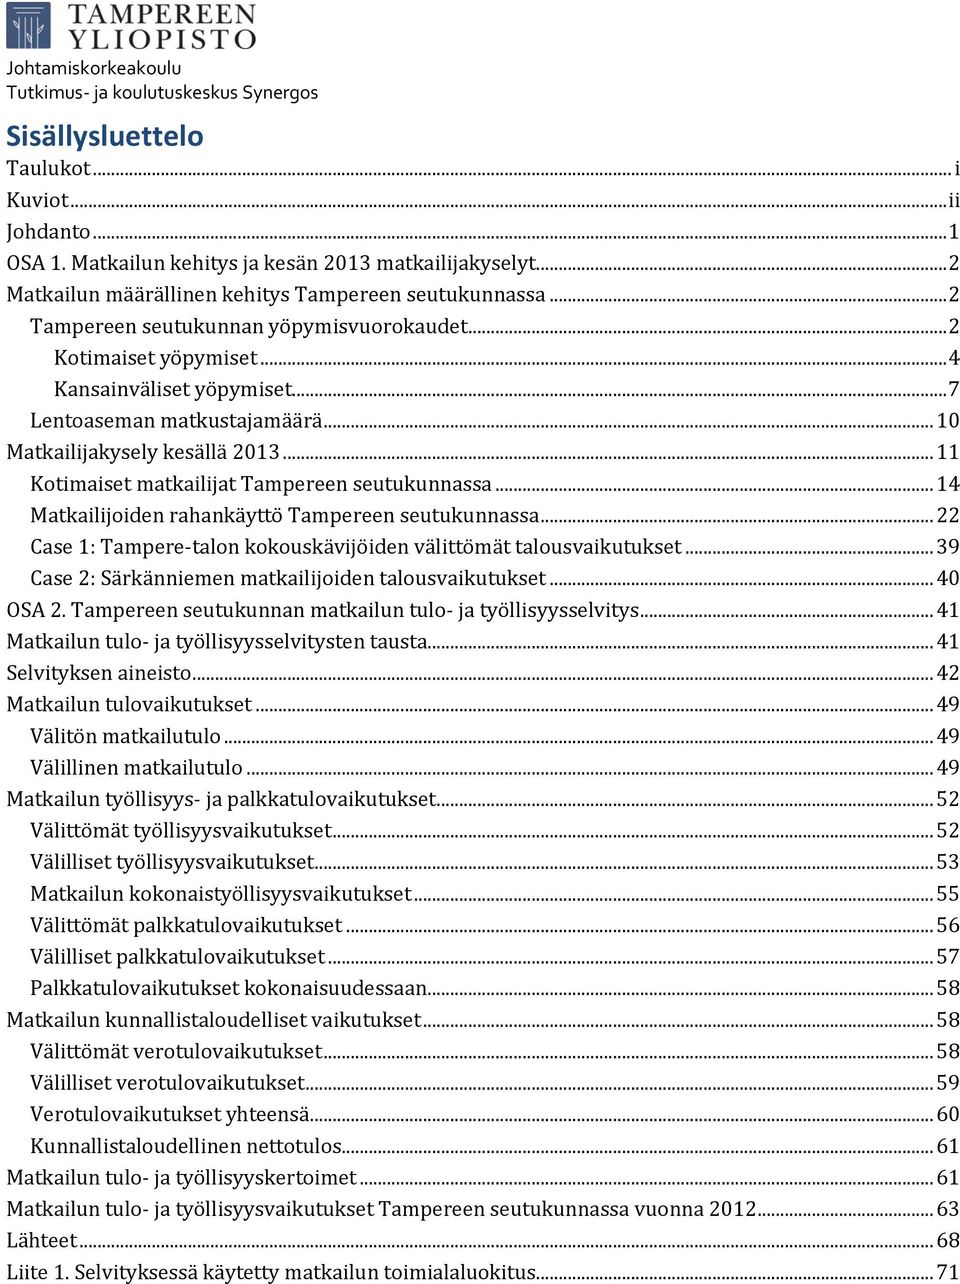 .. 11 Kotimaiset matkailijat Tampereen seutukunnassa... 14 Matkailijoiden rahankäyttö Tampereen seutukunnassa... 22 Case 1: Tampere-talon kokouskävijöiden välittömät talousvaikutukset.